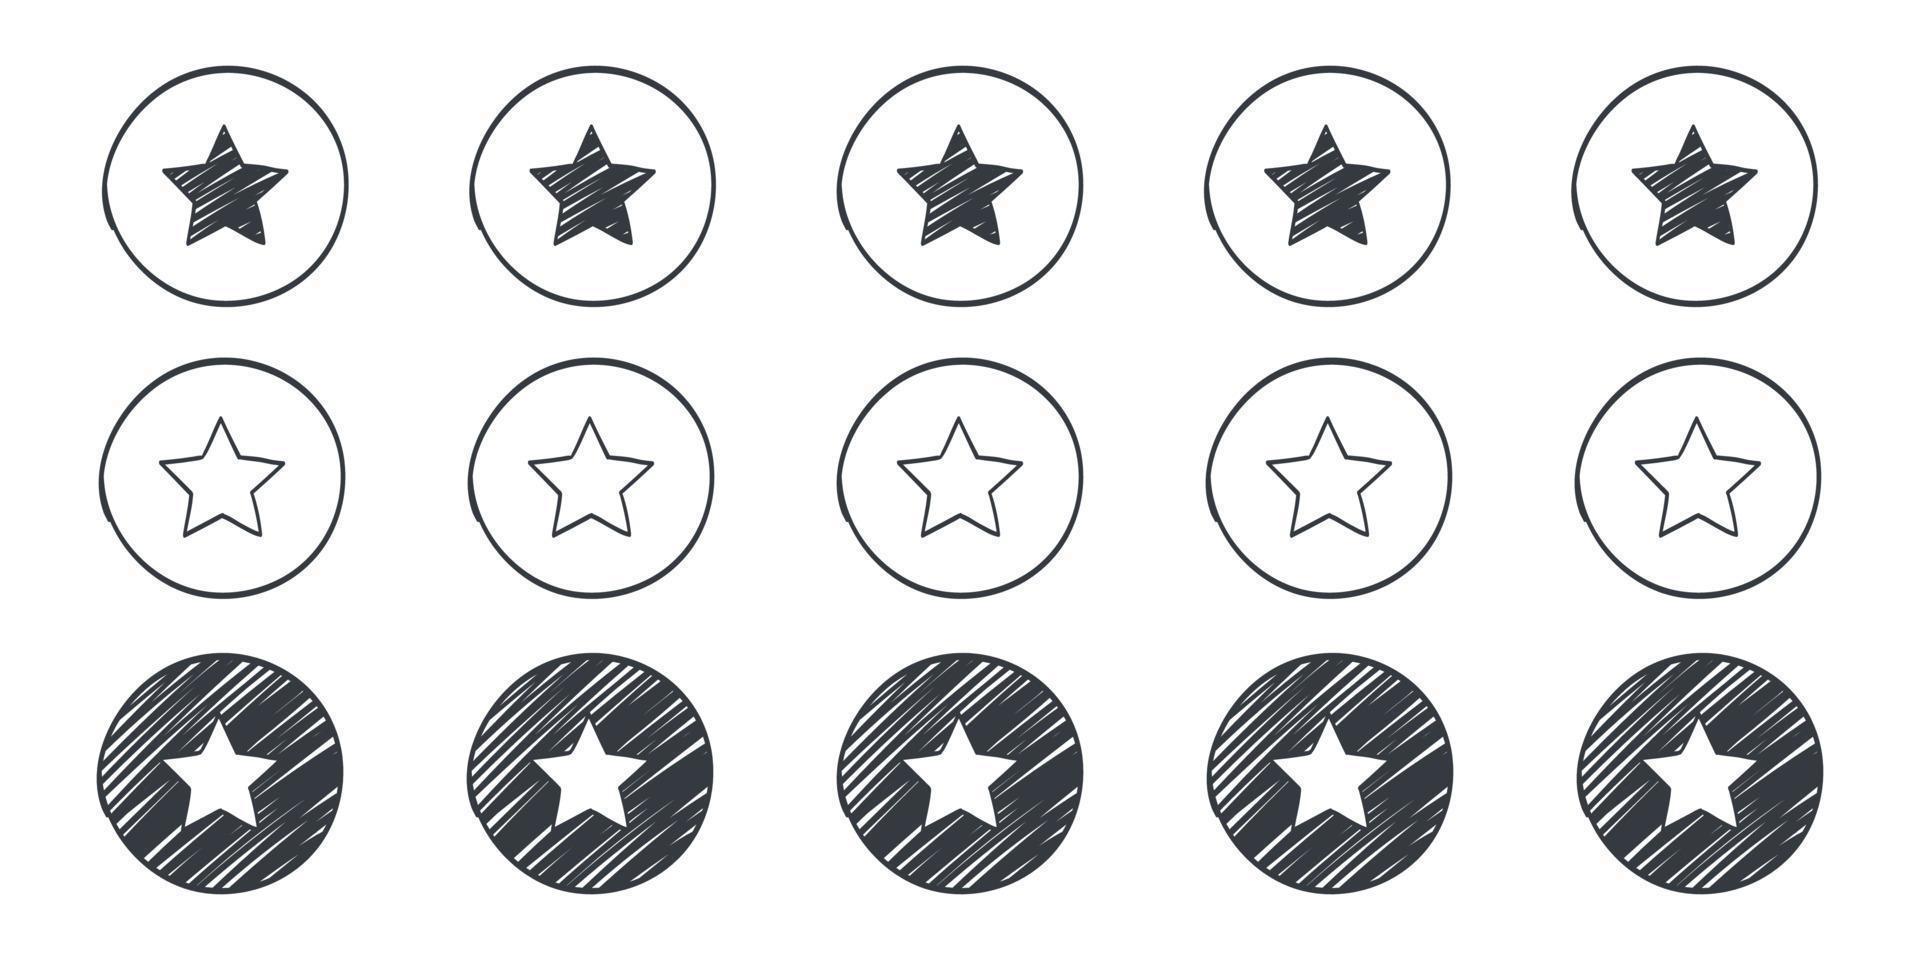 kwaliteit beoordeling tekens. tekening sterren pictogrammen. getrokken pictogrammen van sterren. vector illustratie